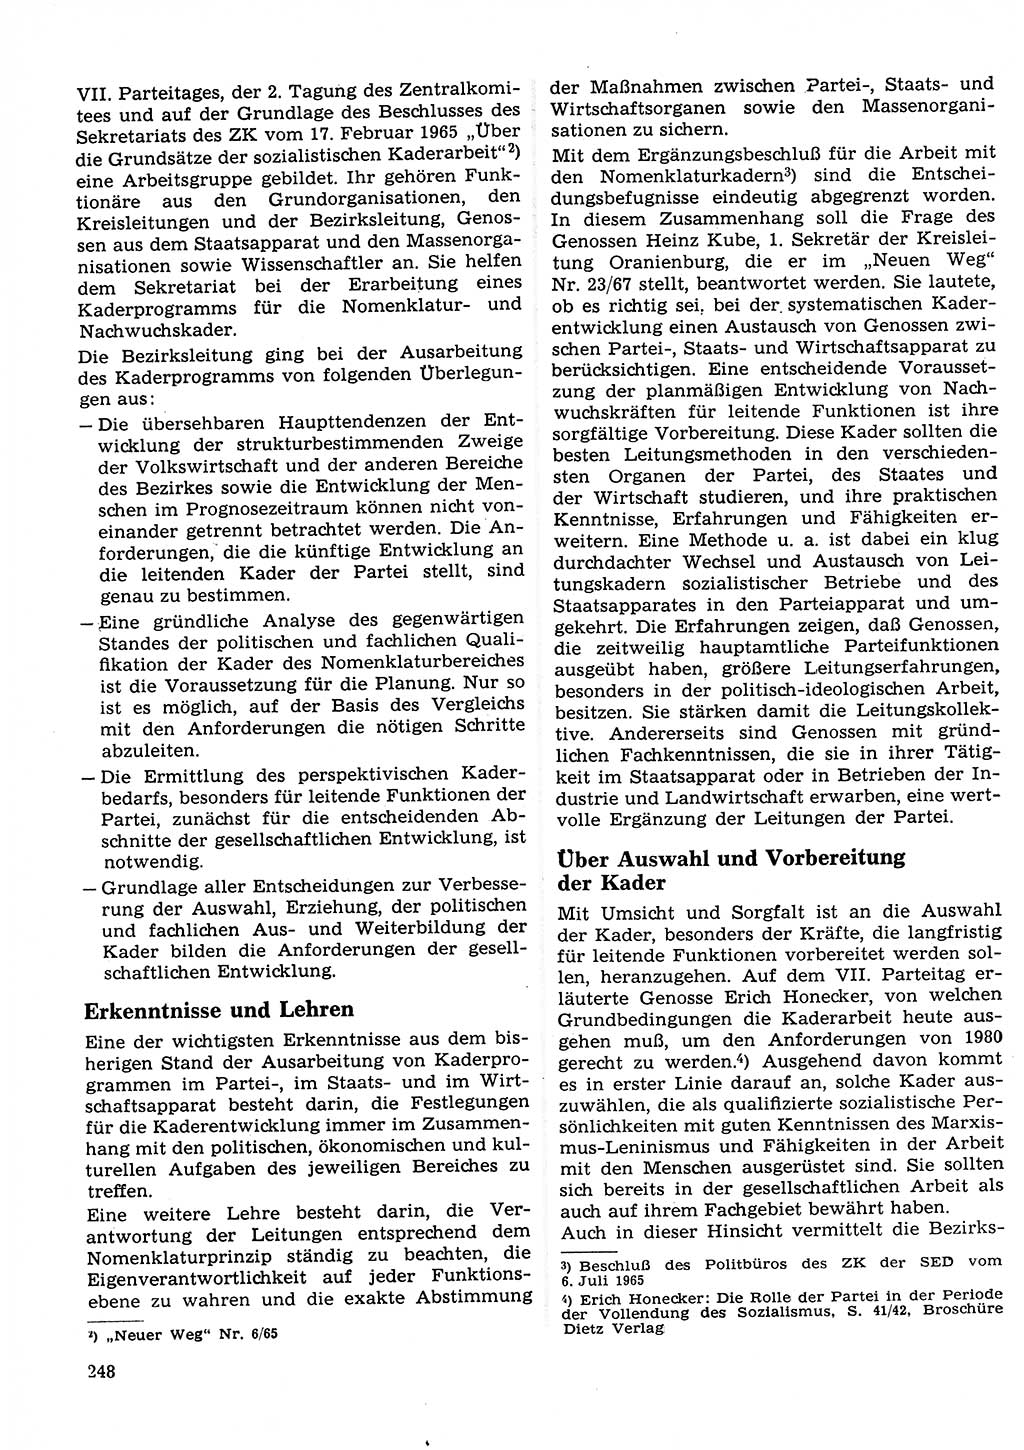 Neuer Weg (NW), Organ des Zentralkomitees (ZK) der SED (Sozialistische Einheitspartei Deutschlands) für Fragen des Parteilebens, 23. Jahrgang [Deutsche Demokratische Republik (DDR)] 1968, Seite 248 (NW ZK SED DDR 1968, S. 248)